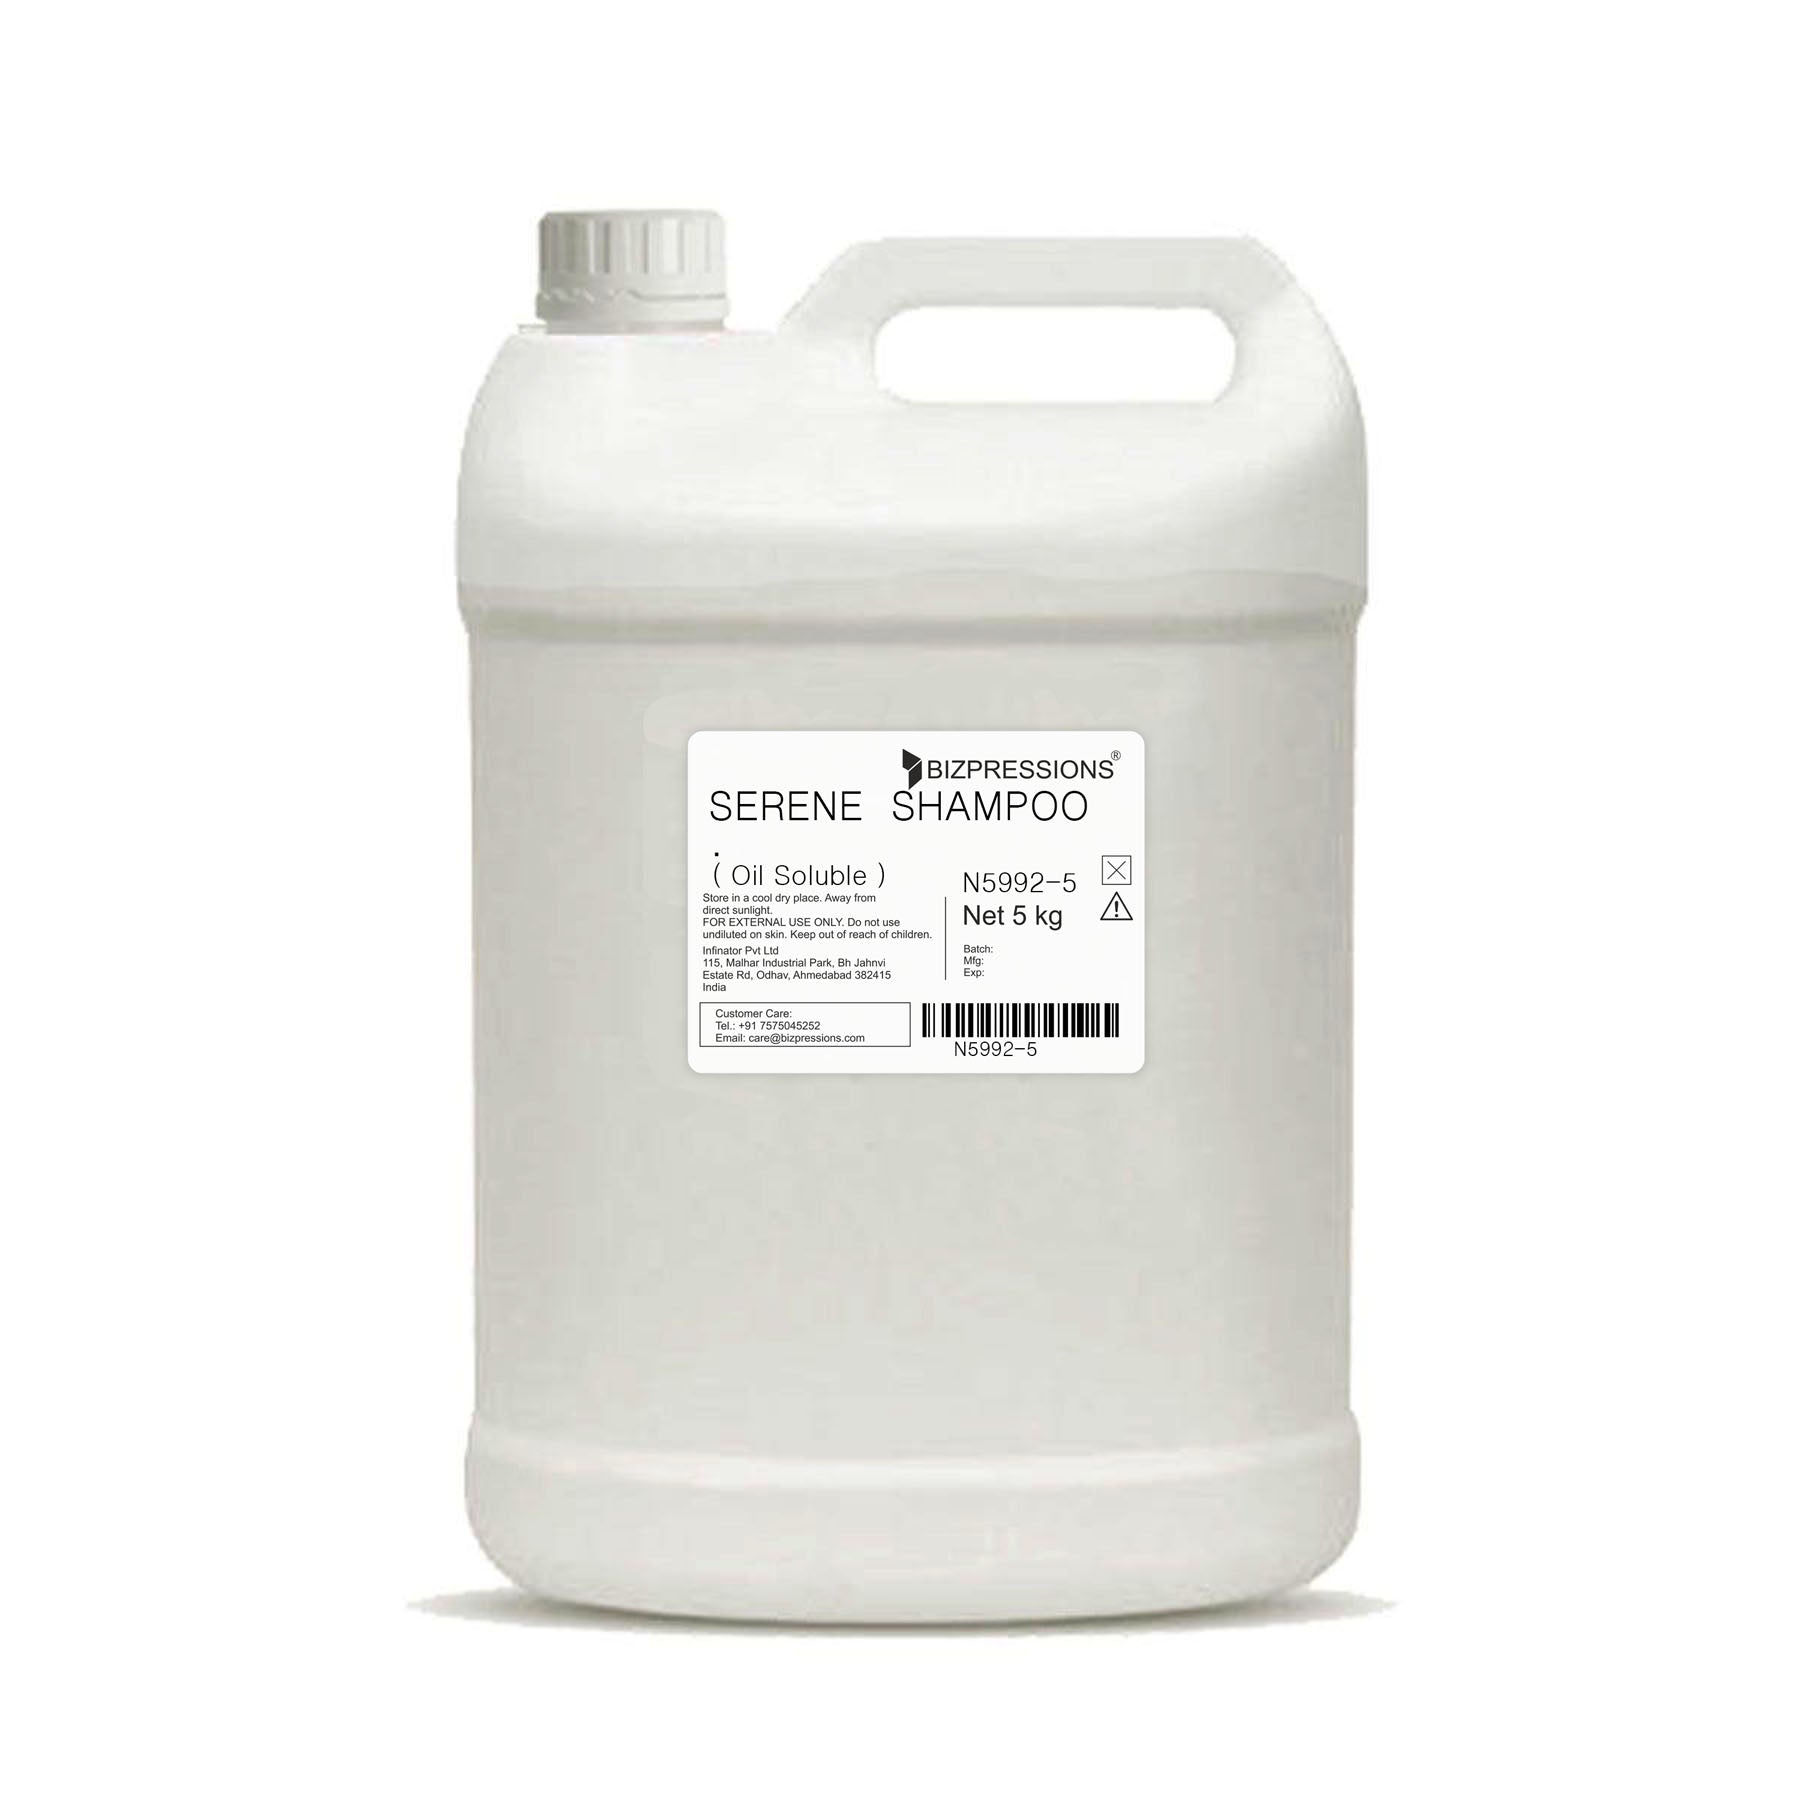 SERENE SHAMPOO - Fragrance ( Oil Soluble ) - 5 kg